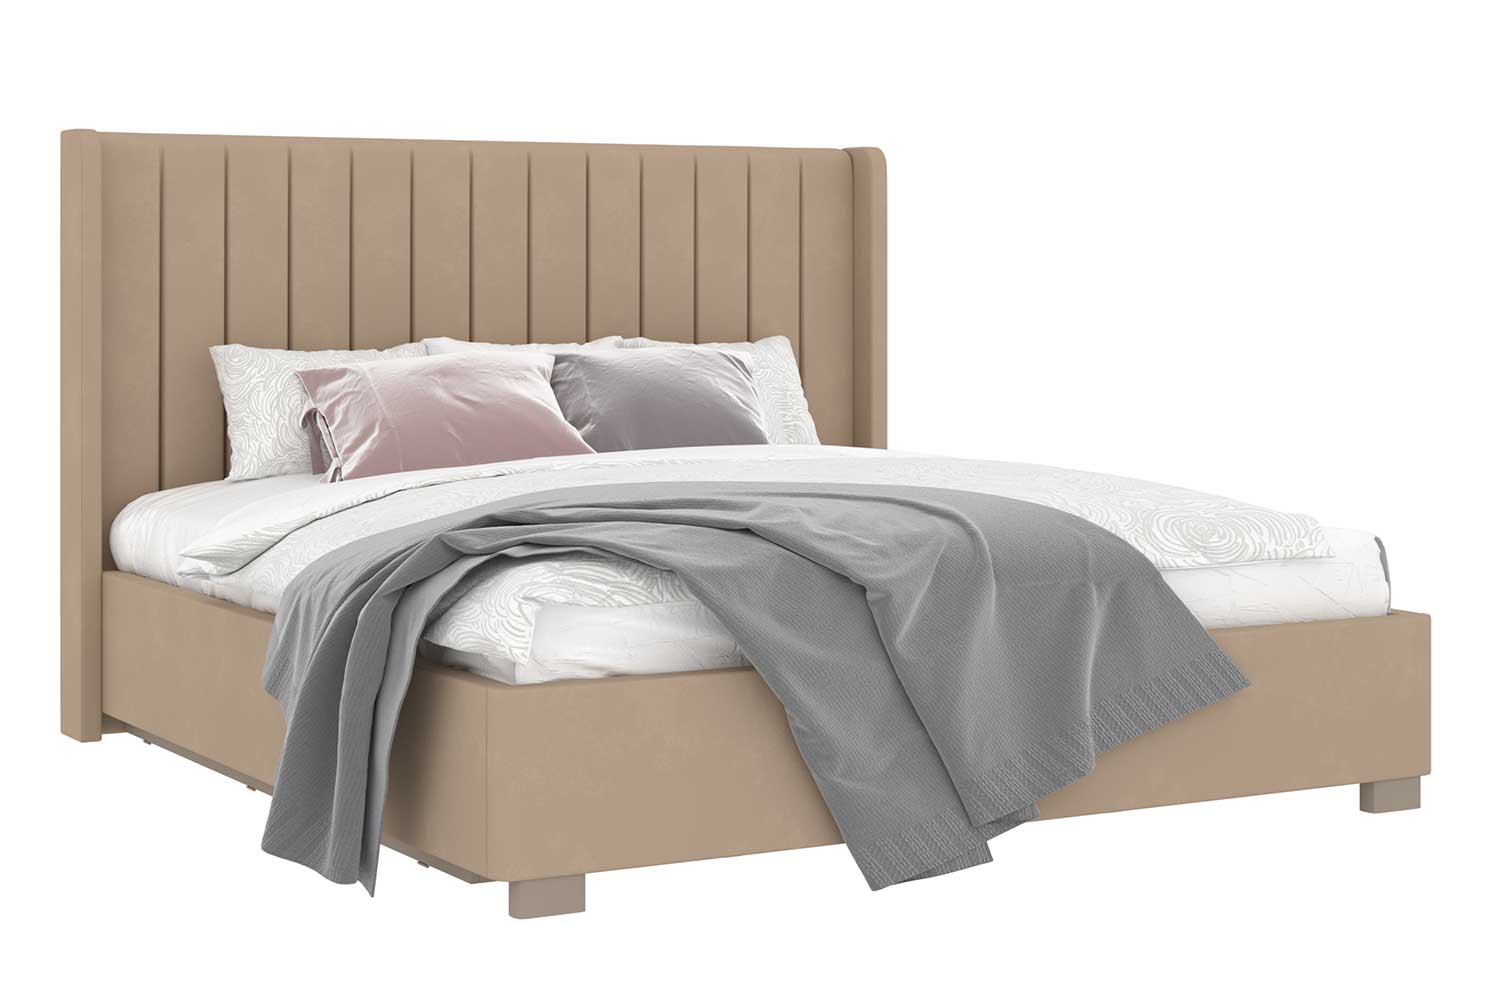 Двуспальные кровати - изображение №2 "Кровать Аделия"  на www.Angstrem-mebel.ru